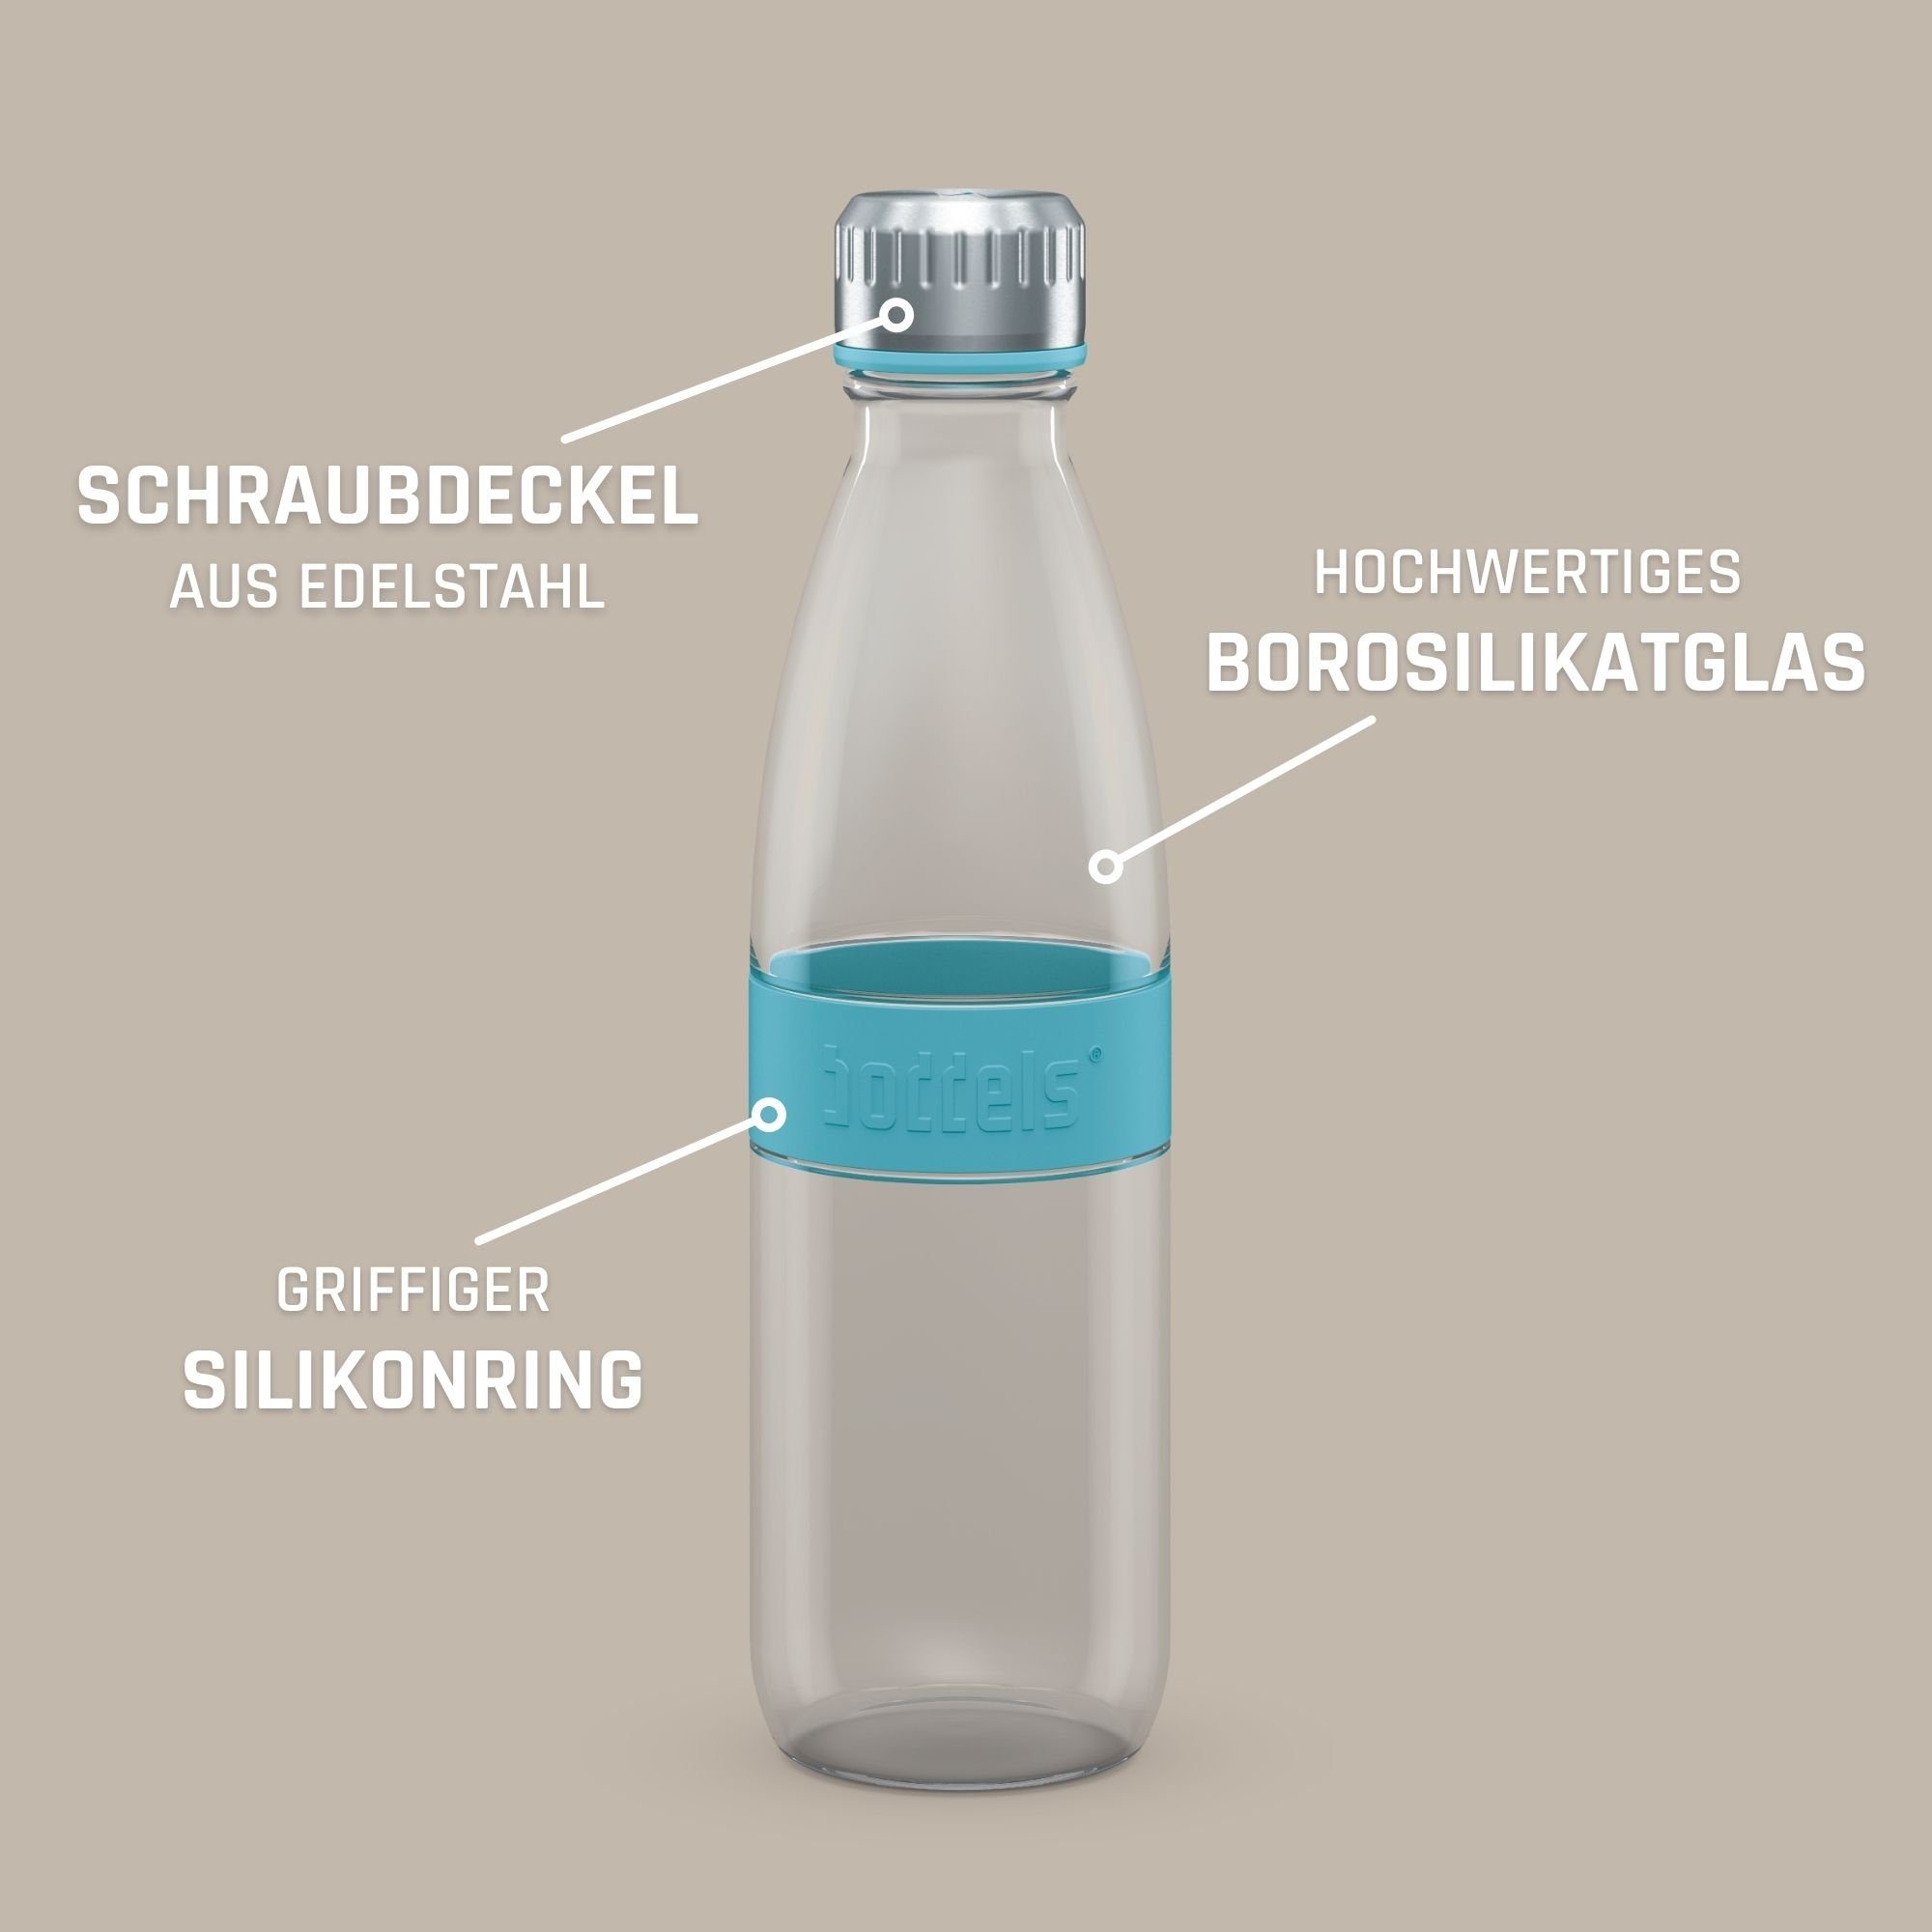 650ml, Flasche boddels auslaufsicher, Trinkflasche aus Türkisblau DREE Glas doppelwandig, bruchfest